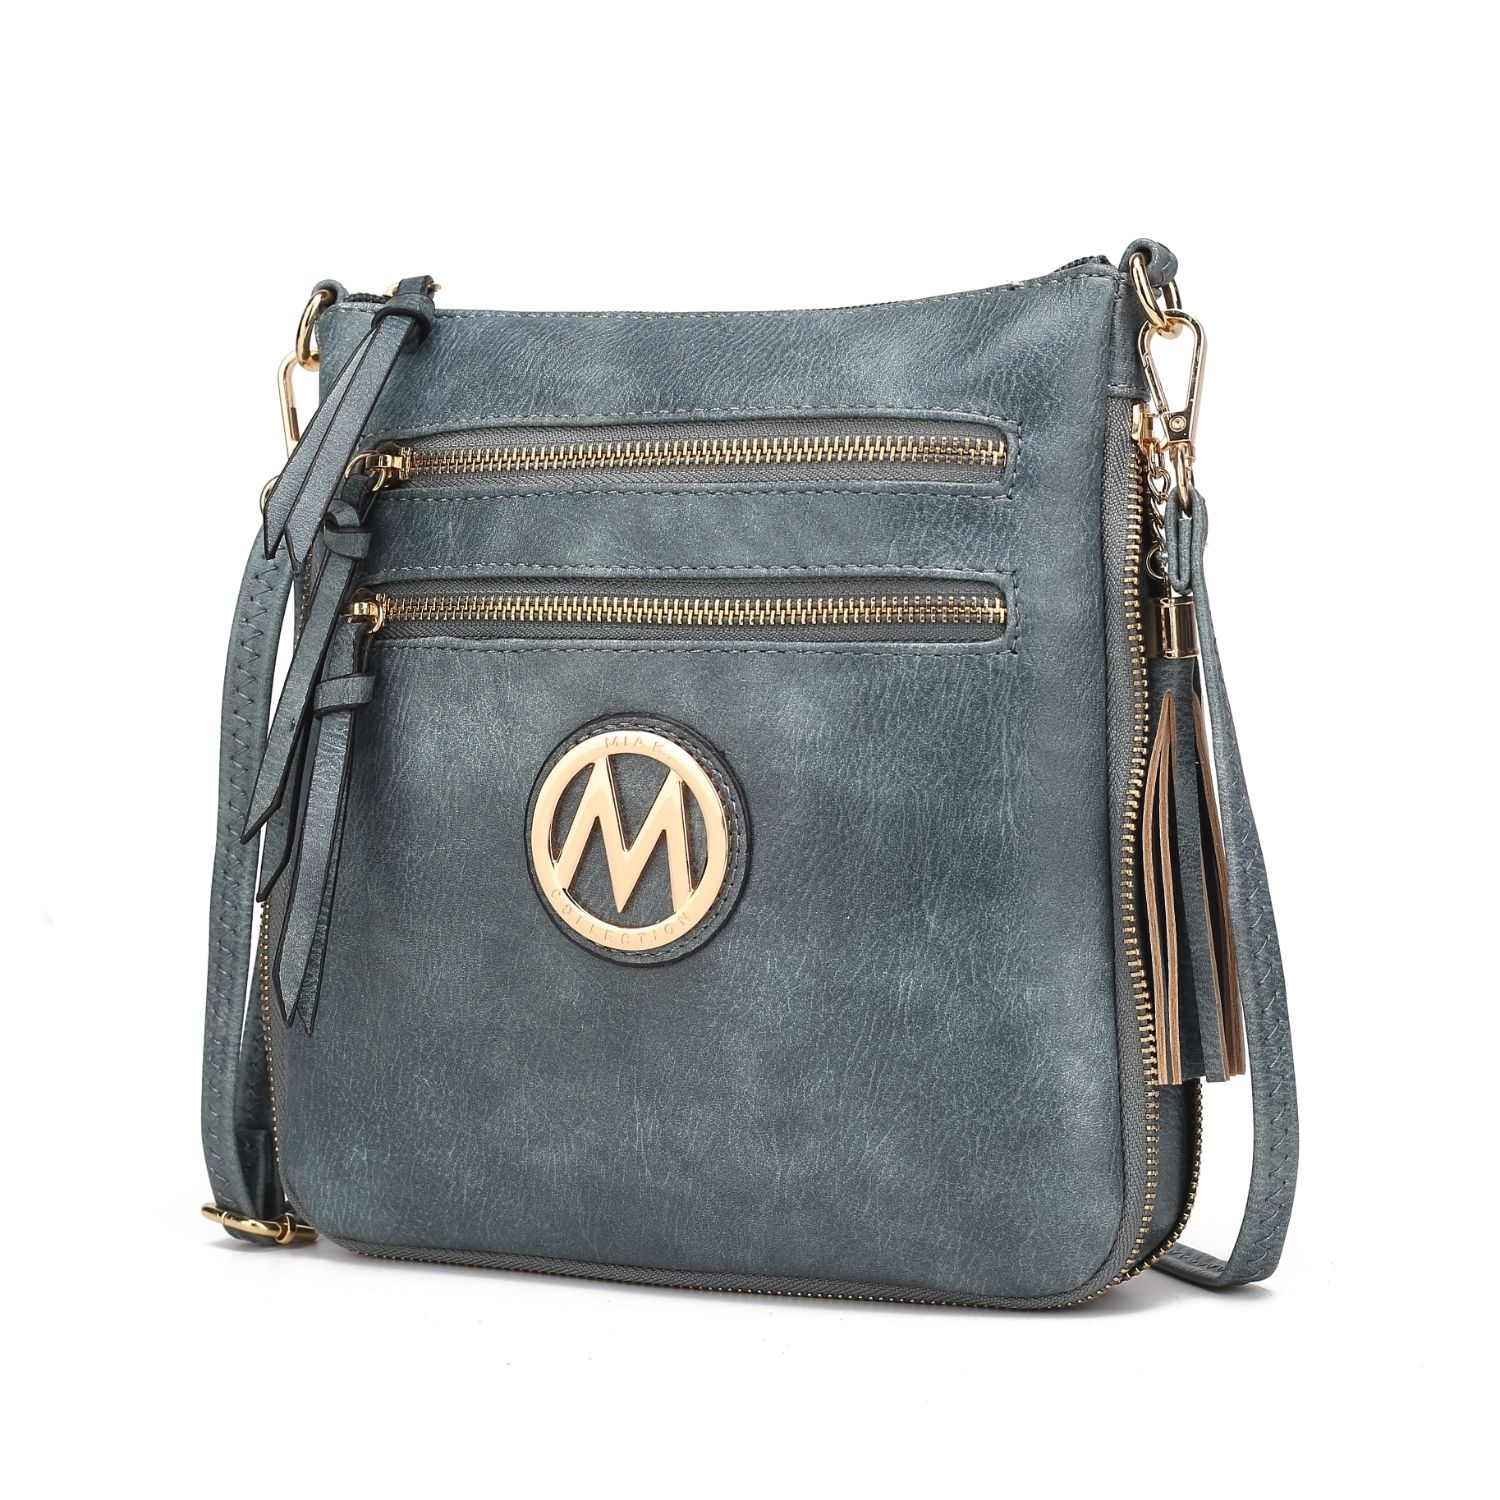 MKF Collection Angelina Crossbody Handbag By Mia K. - Stone Grey